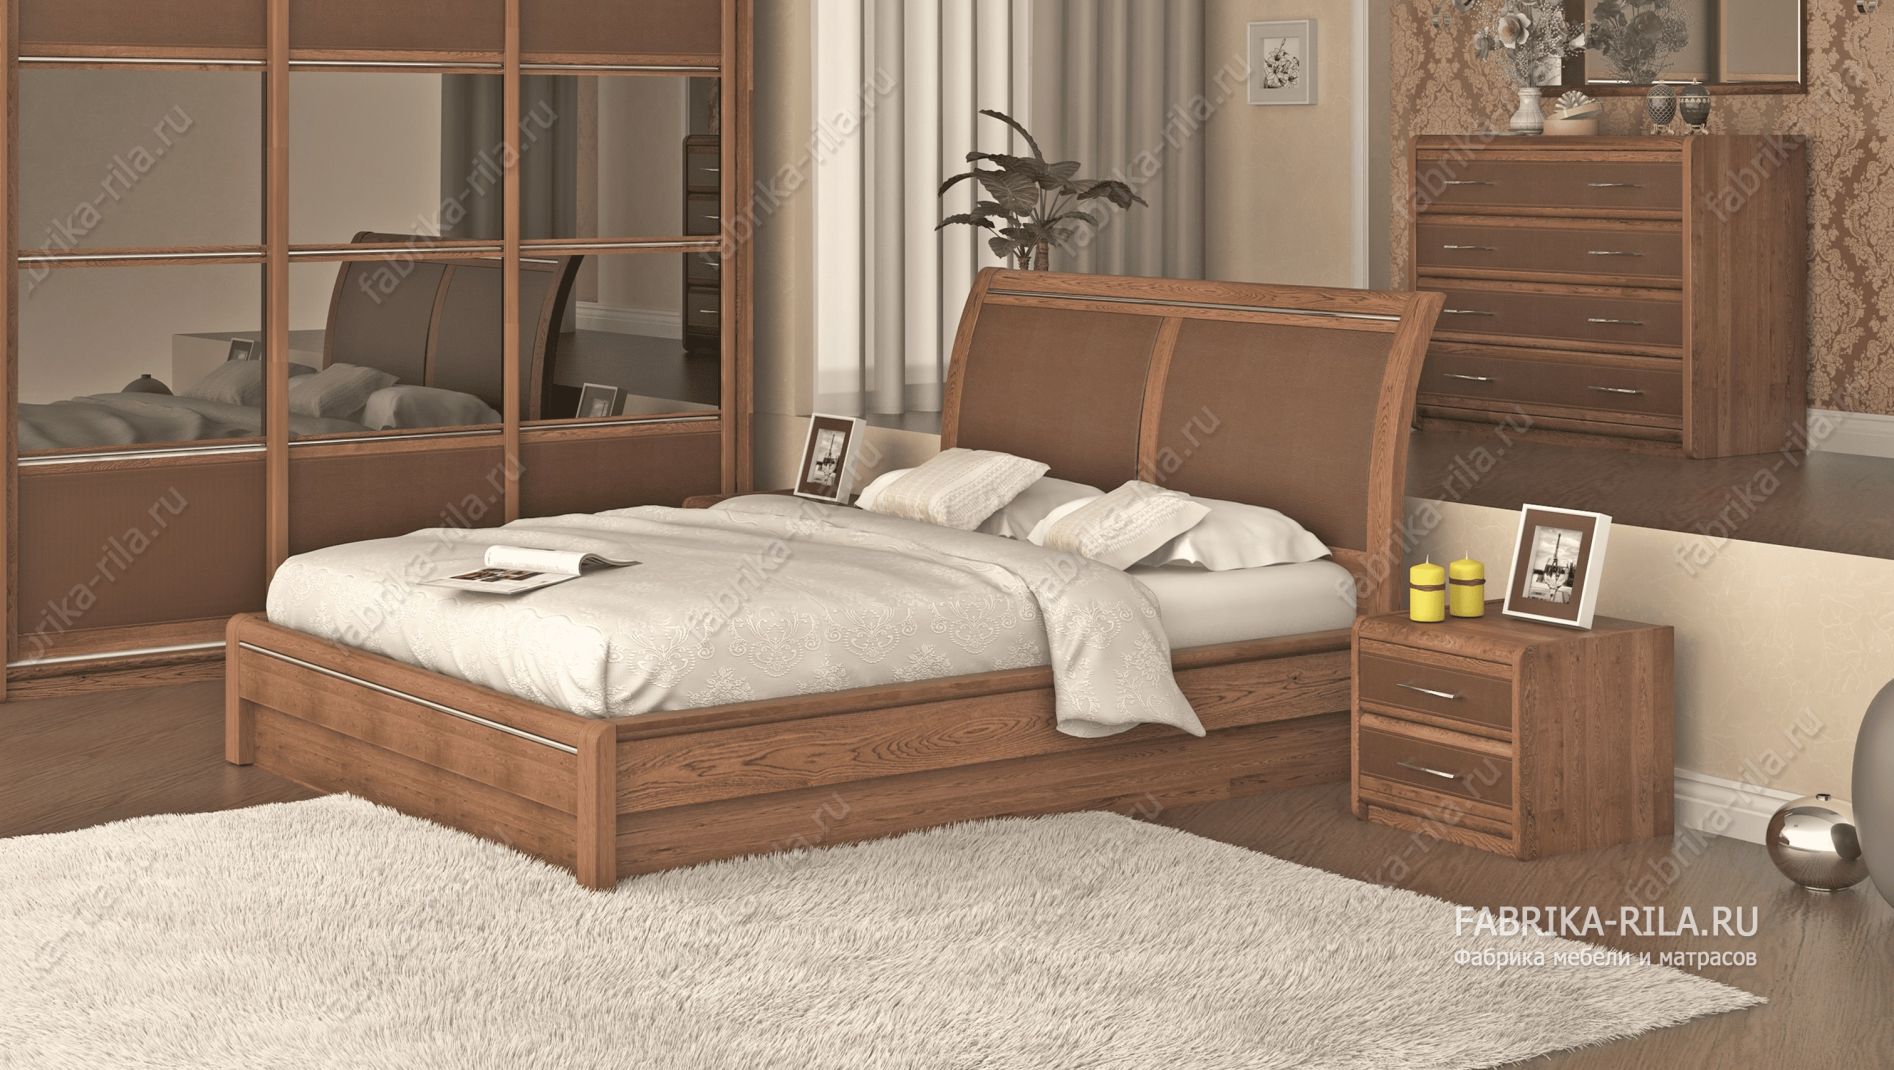 кровать Okaeri 6 см— 120x200 см. из сосны